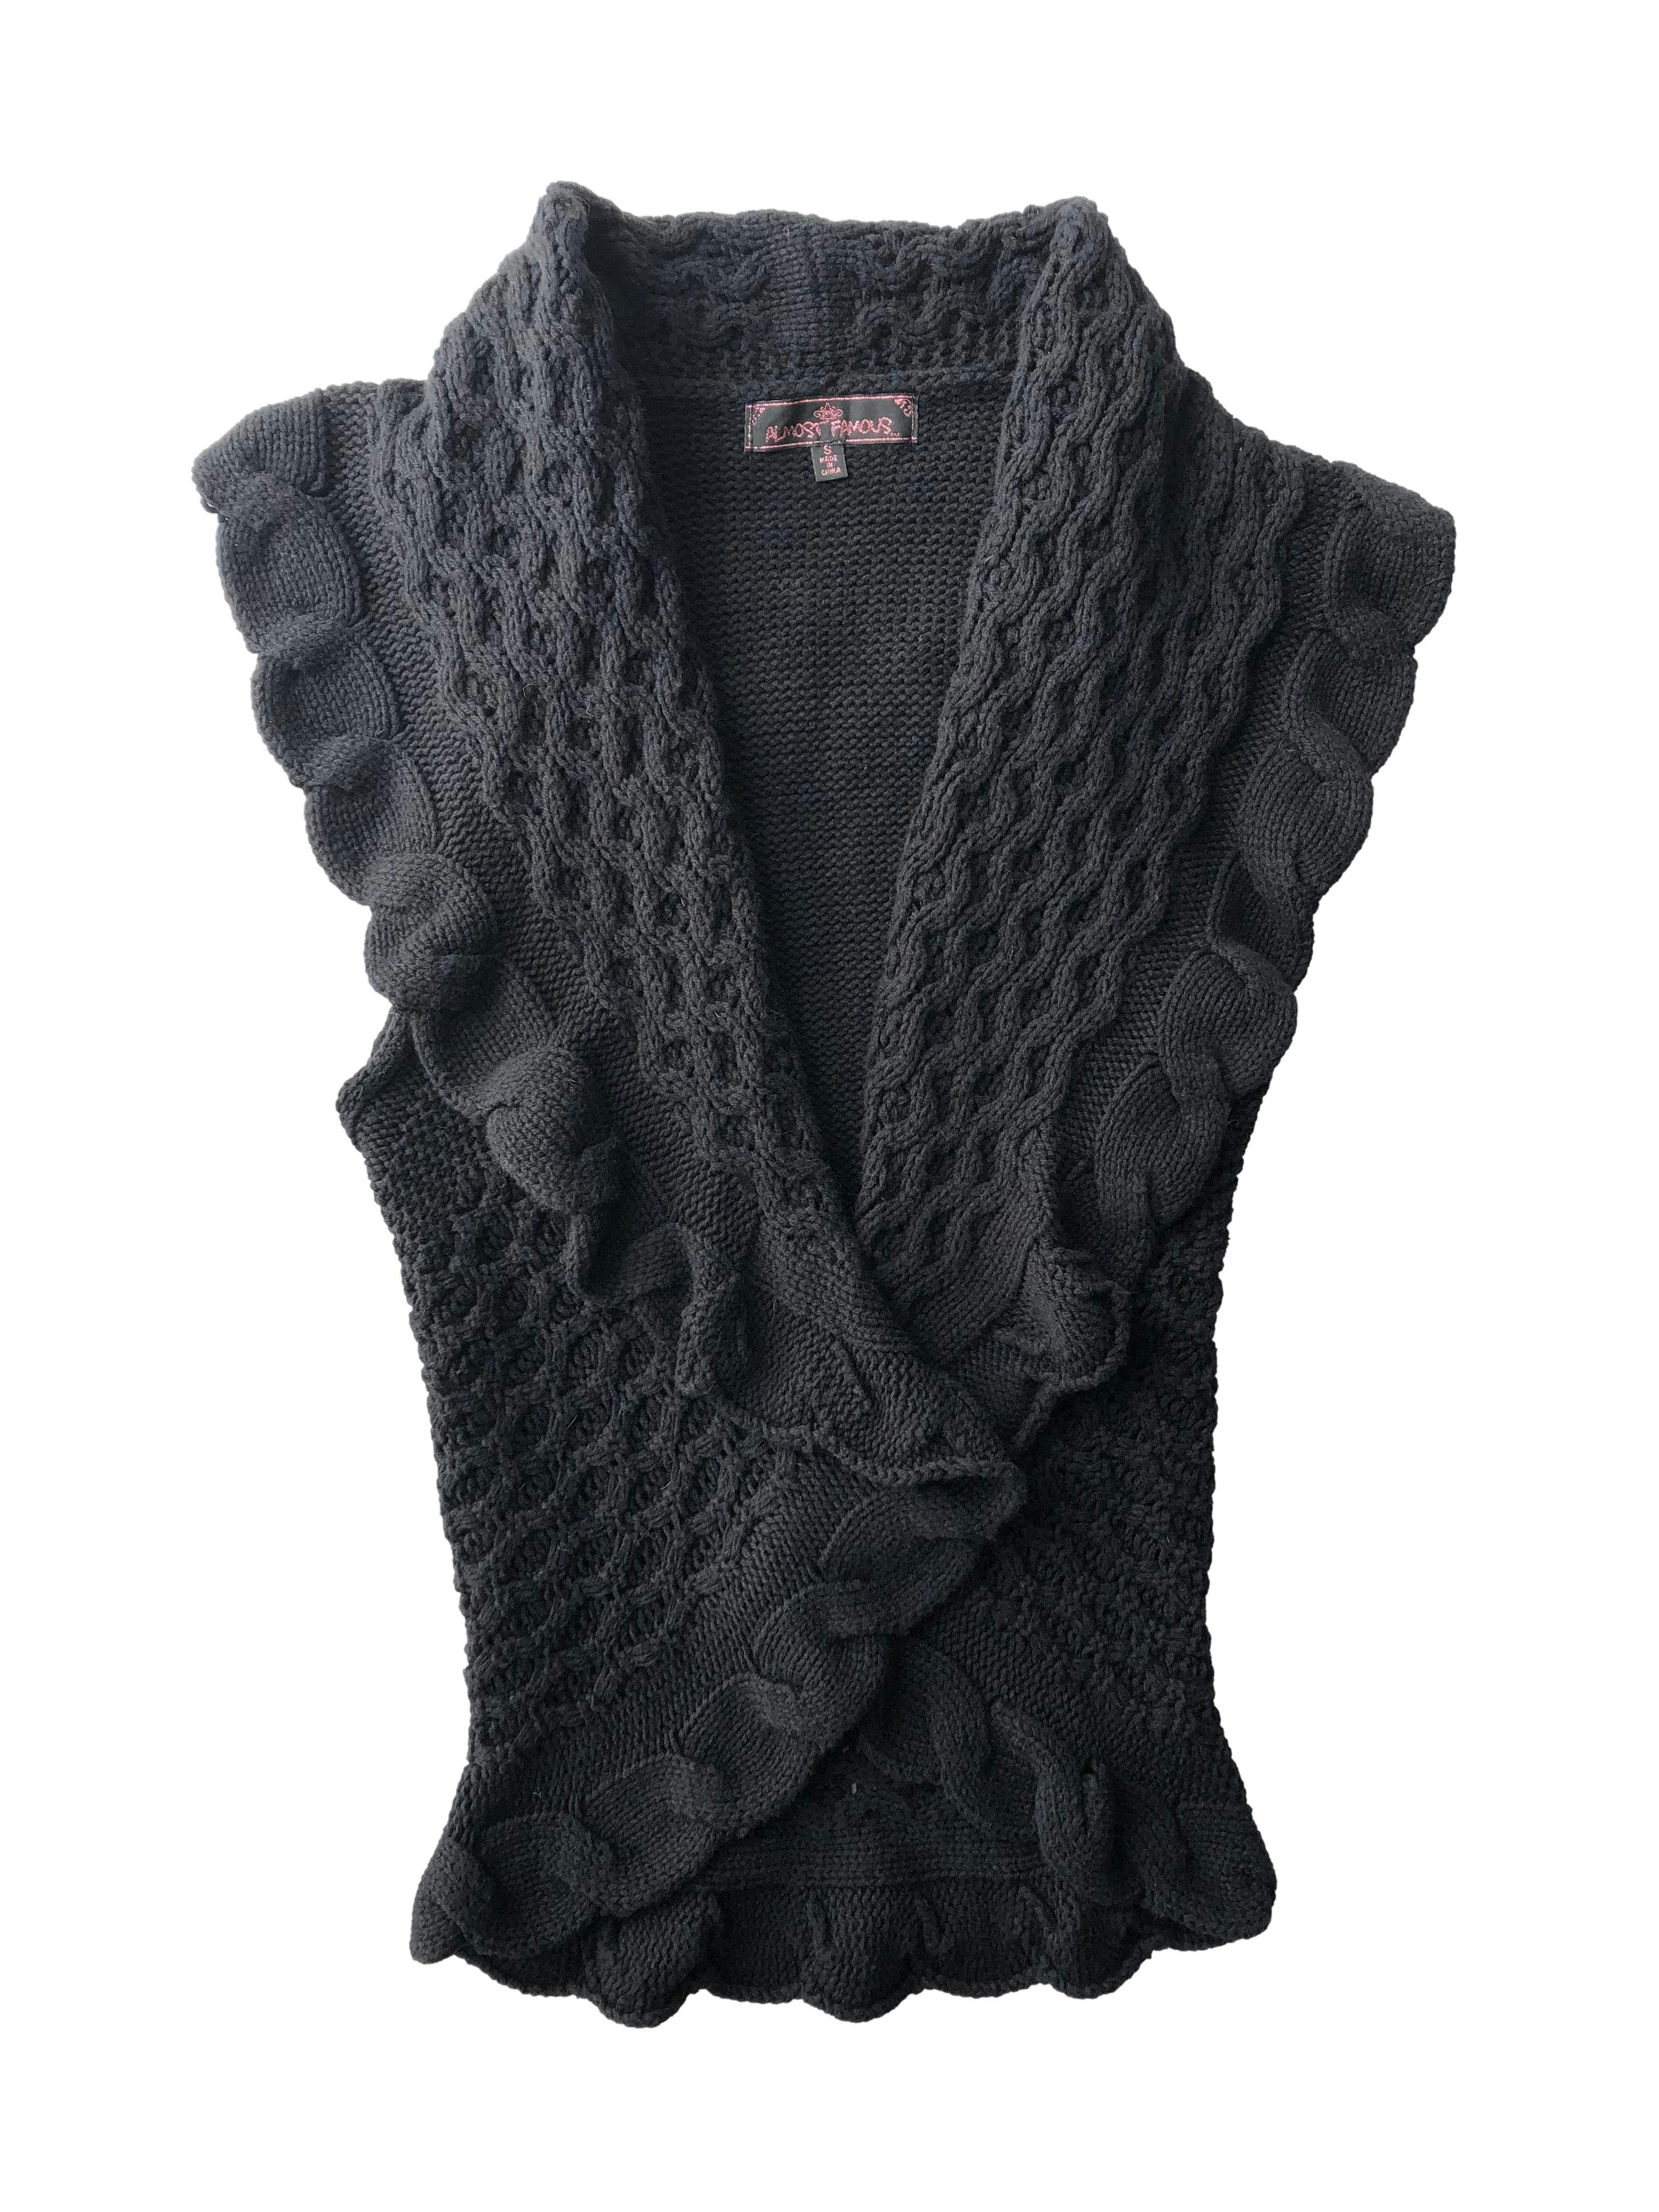 Chaleco negro abierto de corte circular, tejido calado 55% algodón. Busto 80cm, Largo 64cm.